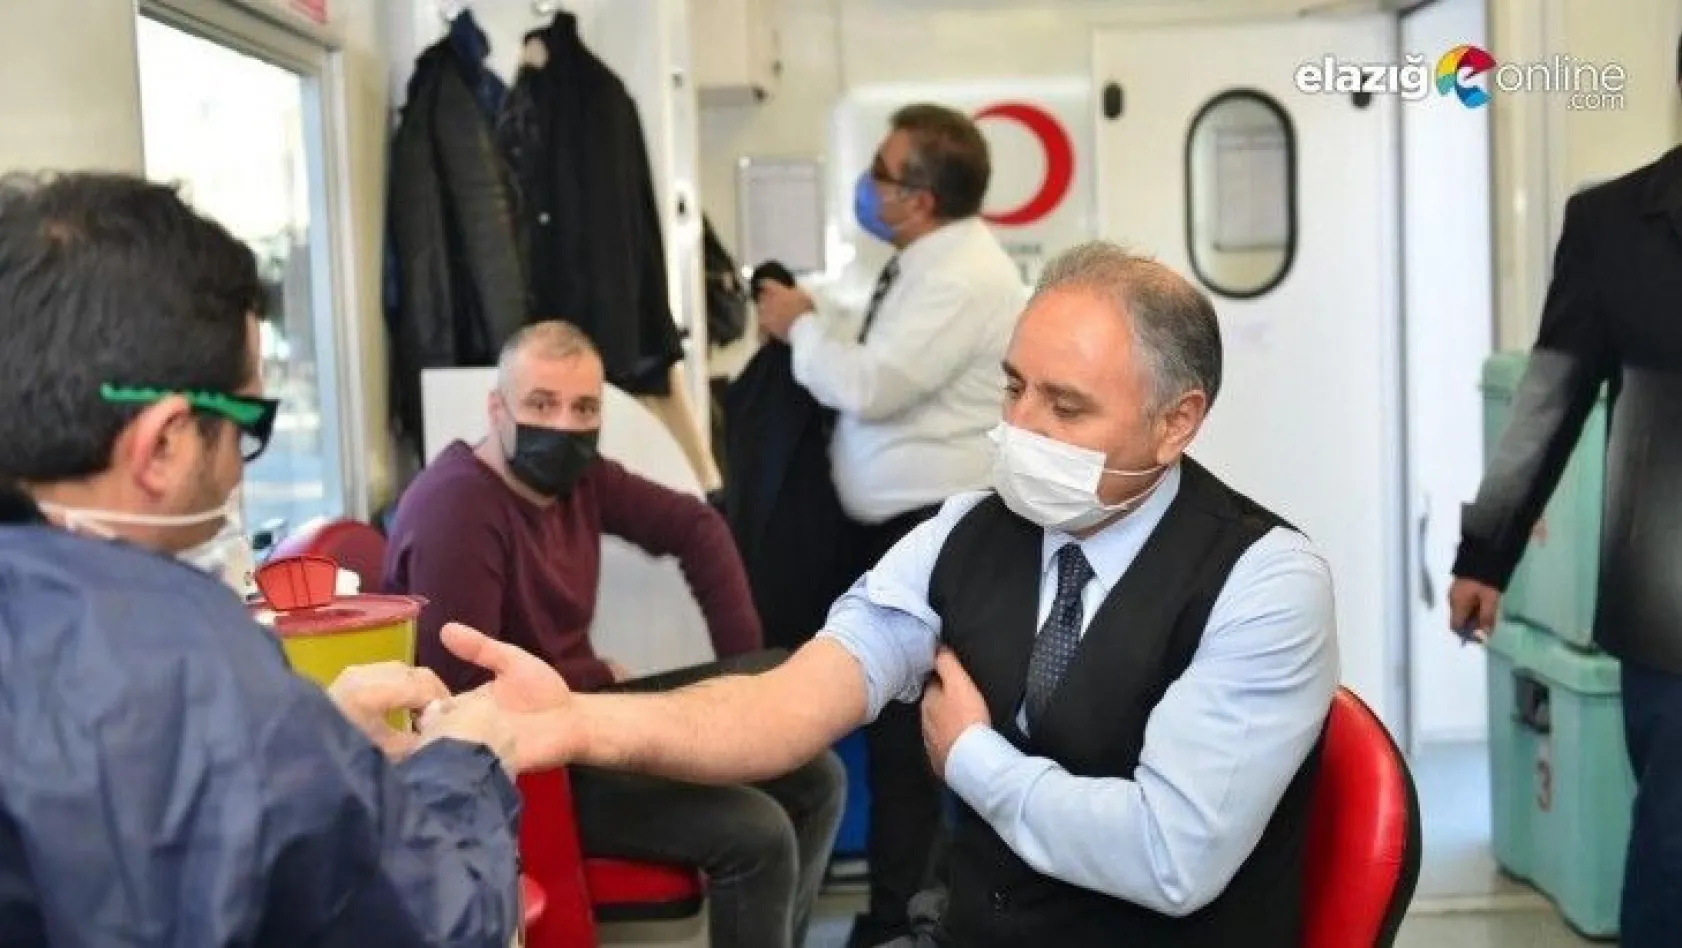 Elazığ'da eğitimciler kan bağışında bulundu